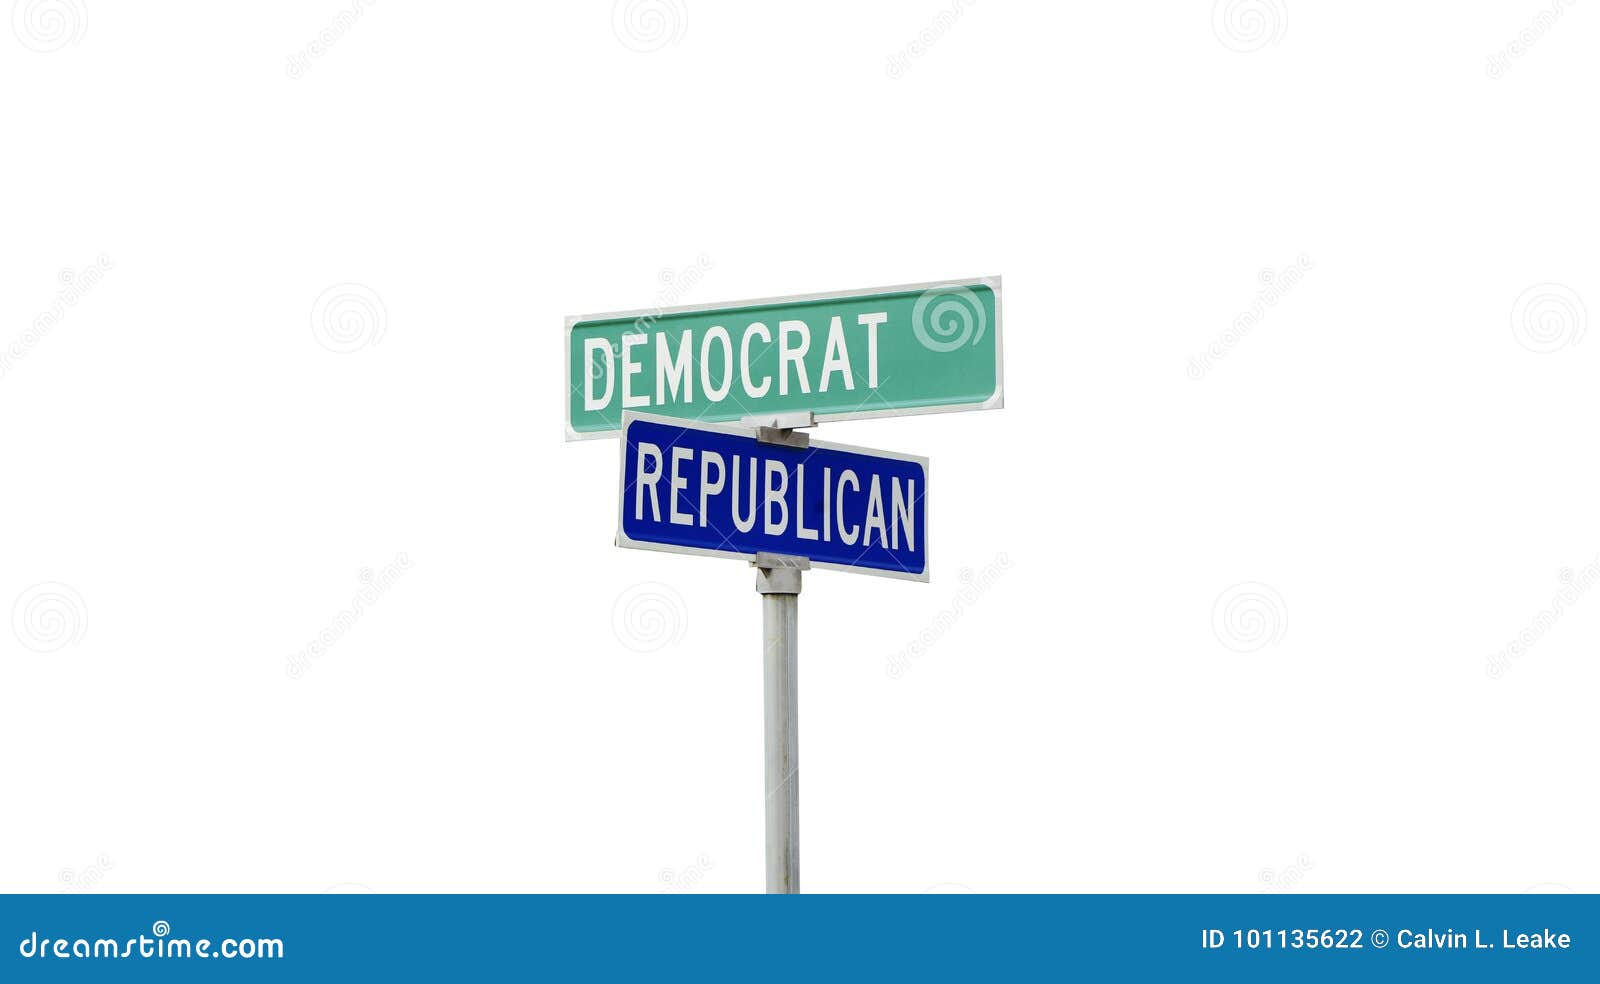 democrat and republican political parties